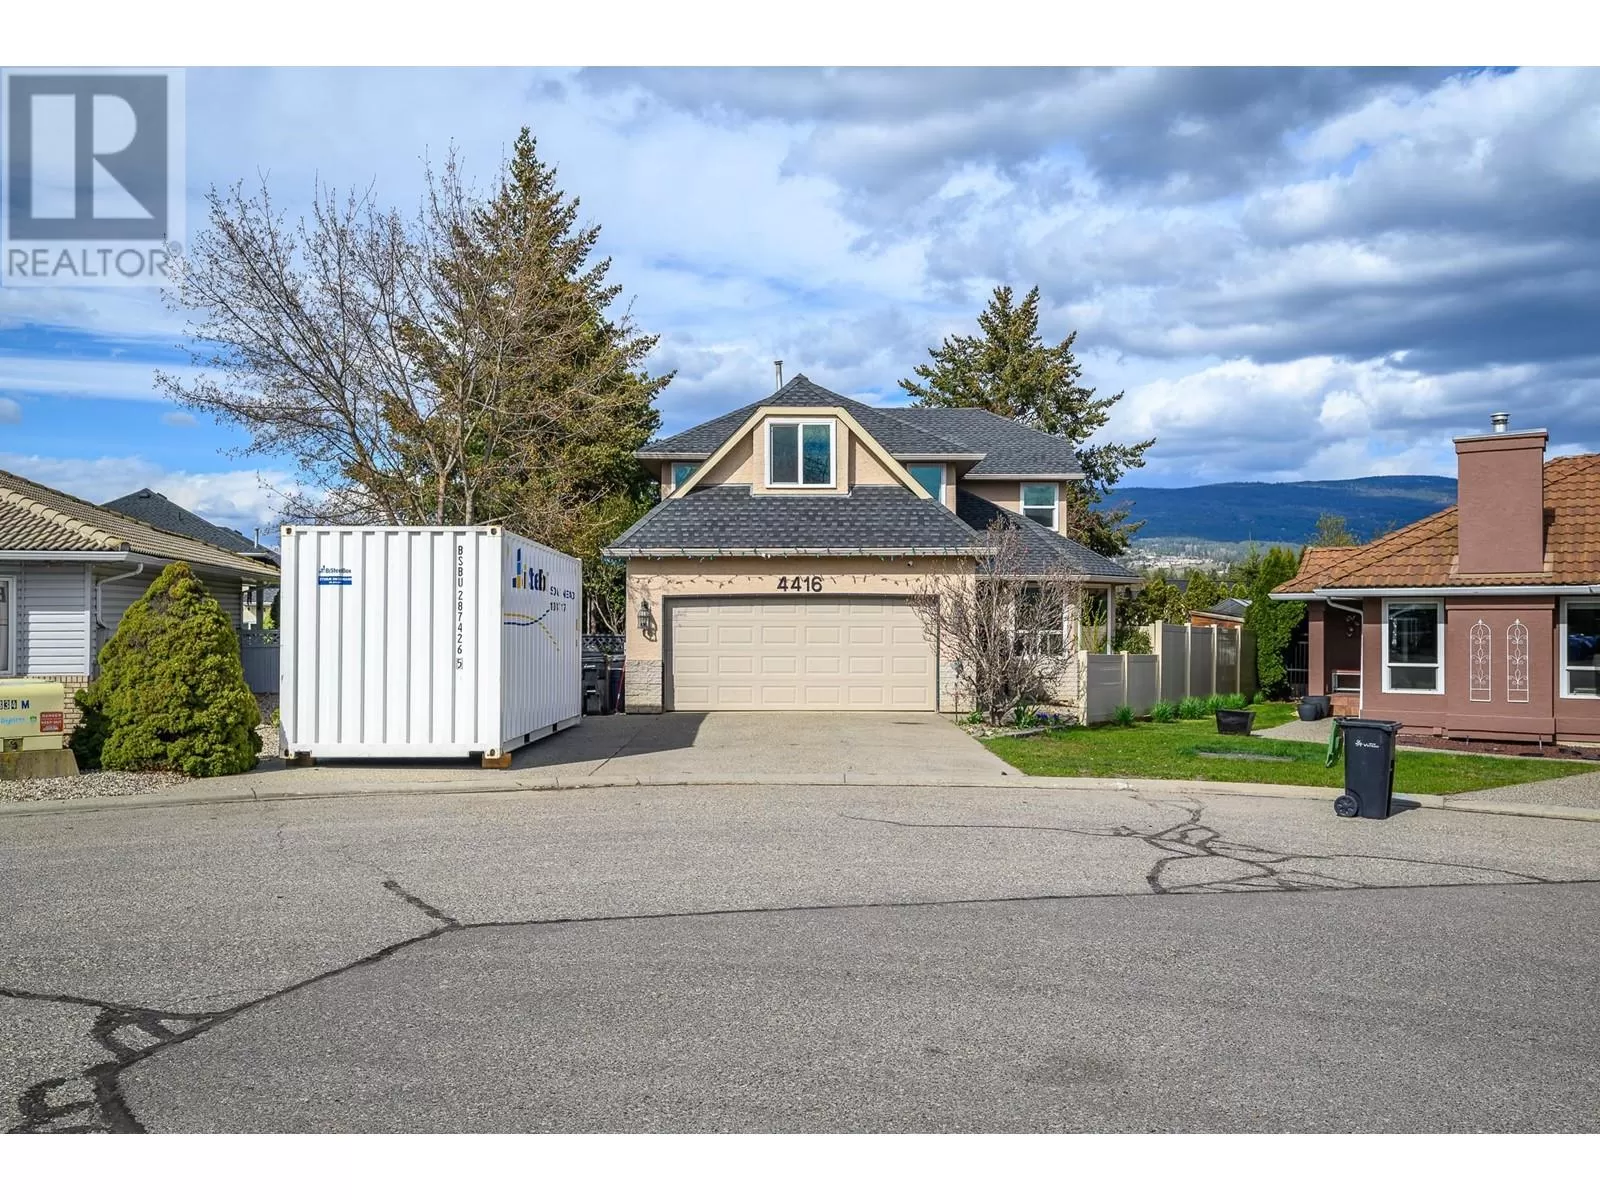 House for rent: 4416 9 Street, Vernon, British Columbia V1T 9K1